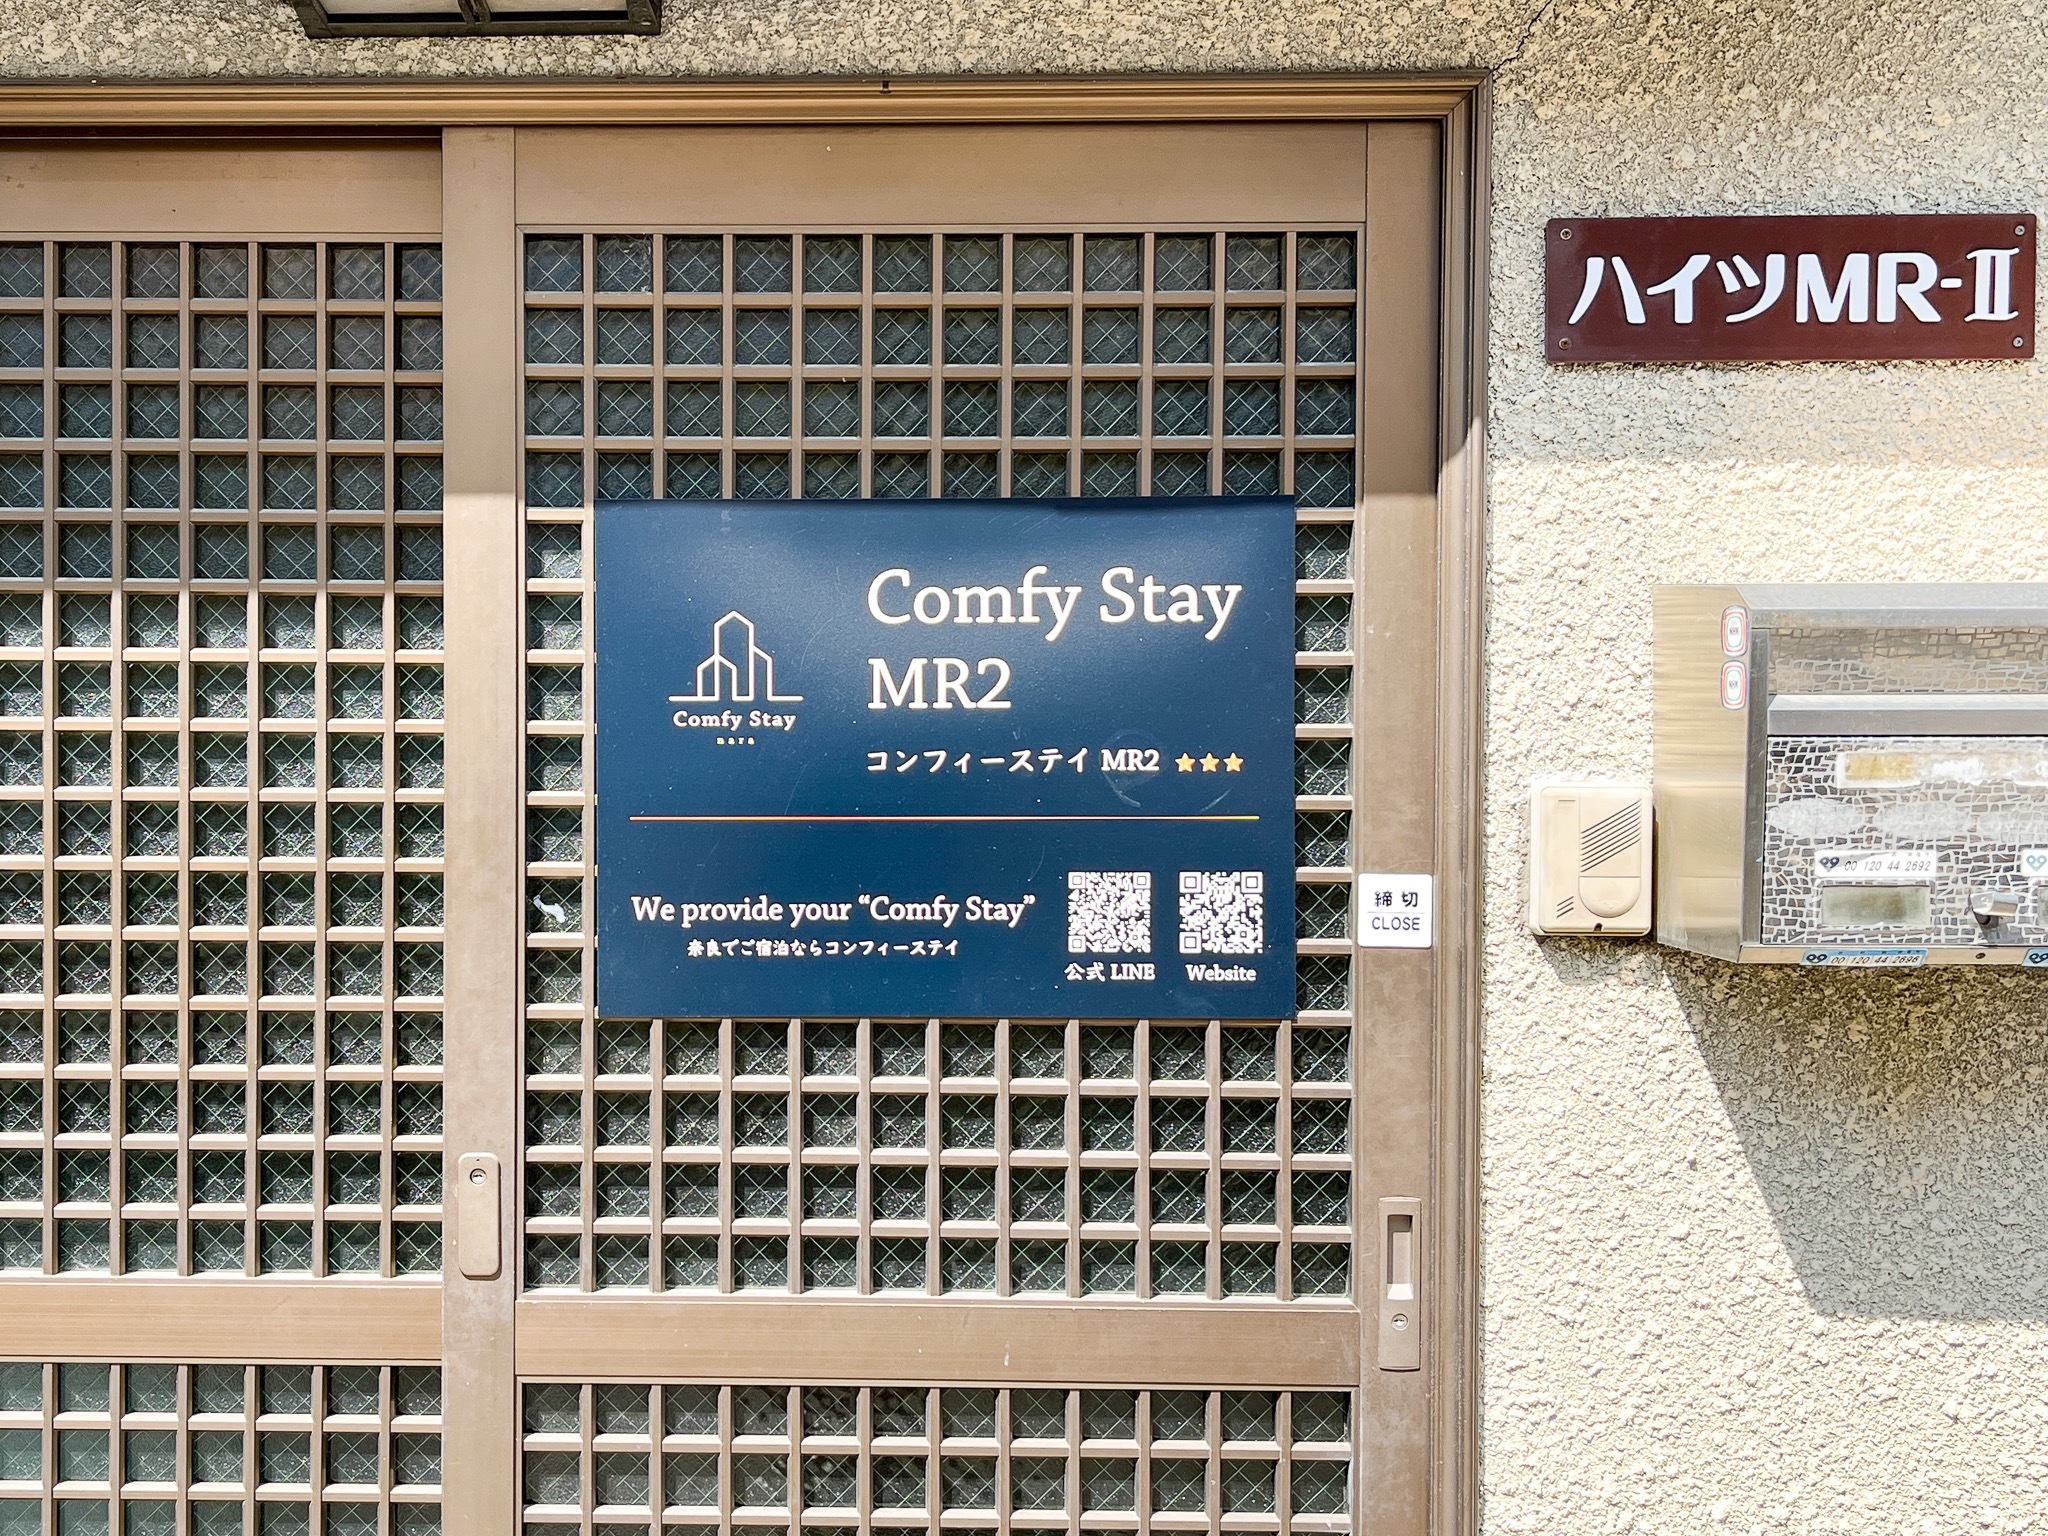 コンフィーステイMR2 202 : 奈良公園近く!改装済みバスルームの綺麗なお部屋